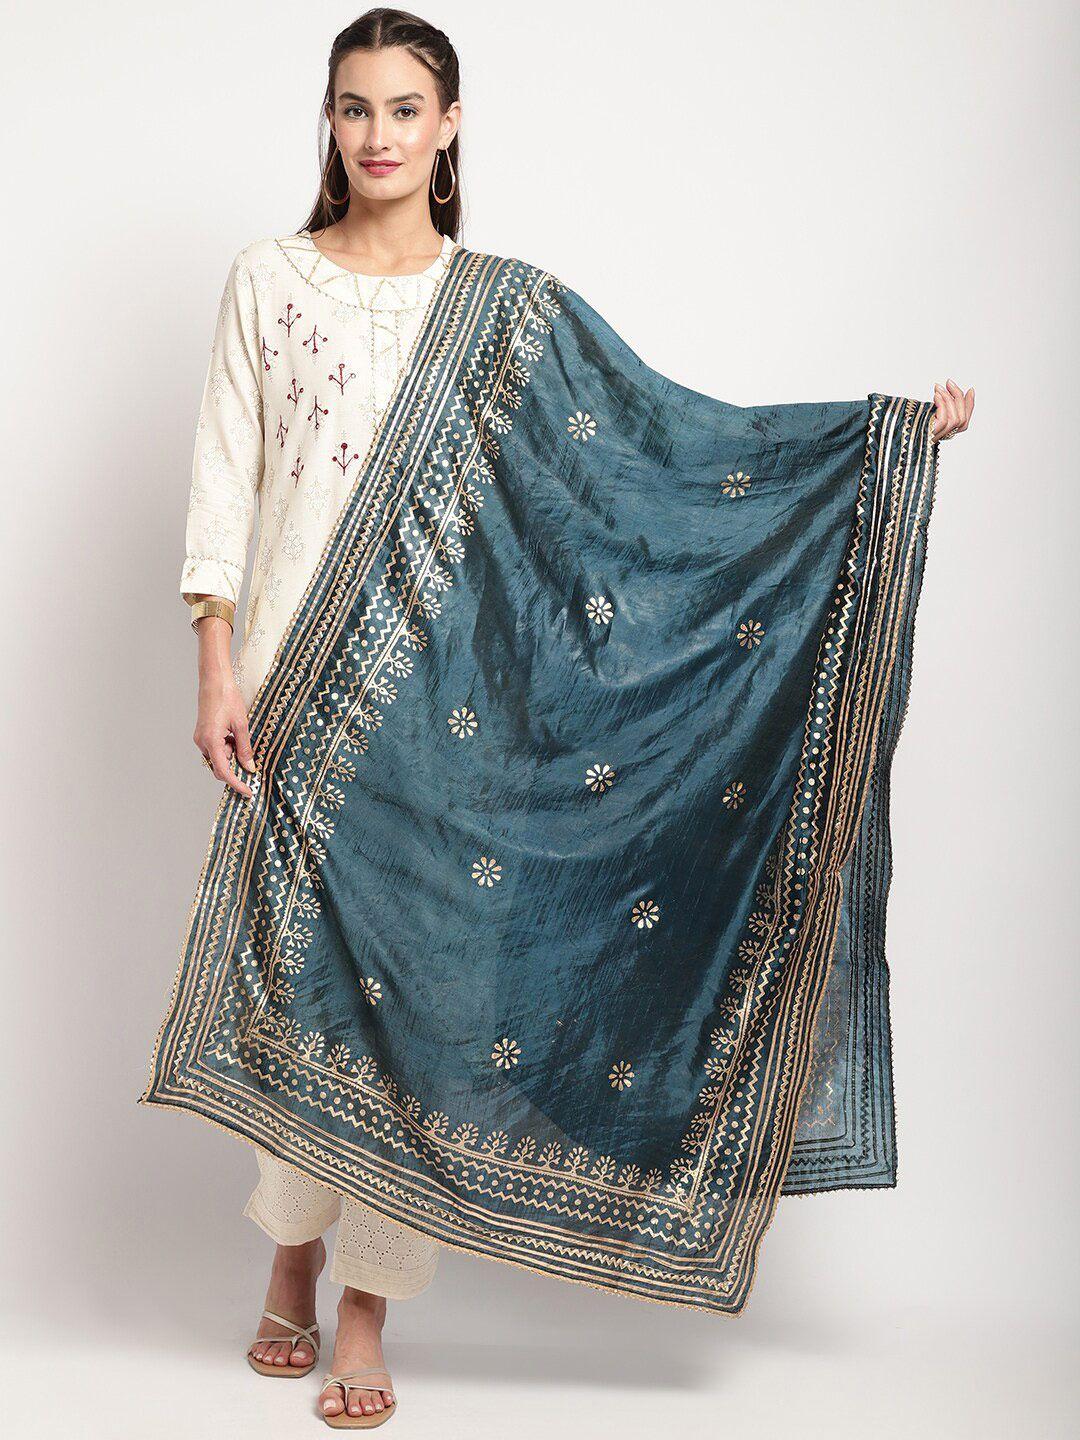 miaz lifestyle silk ethnic motifs printed dupatta